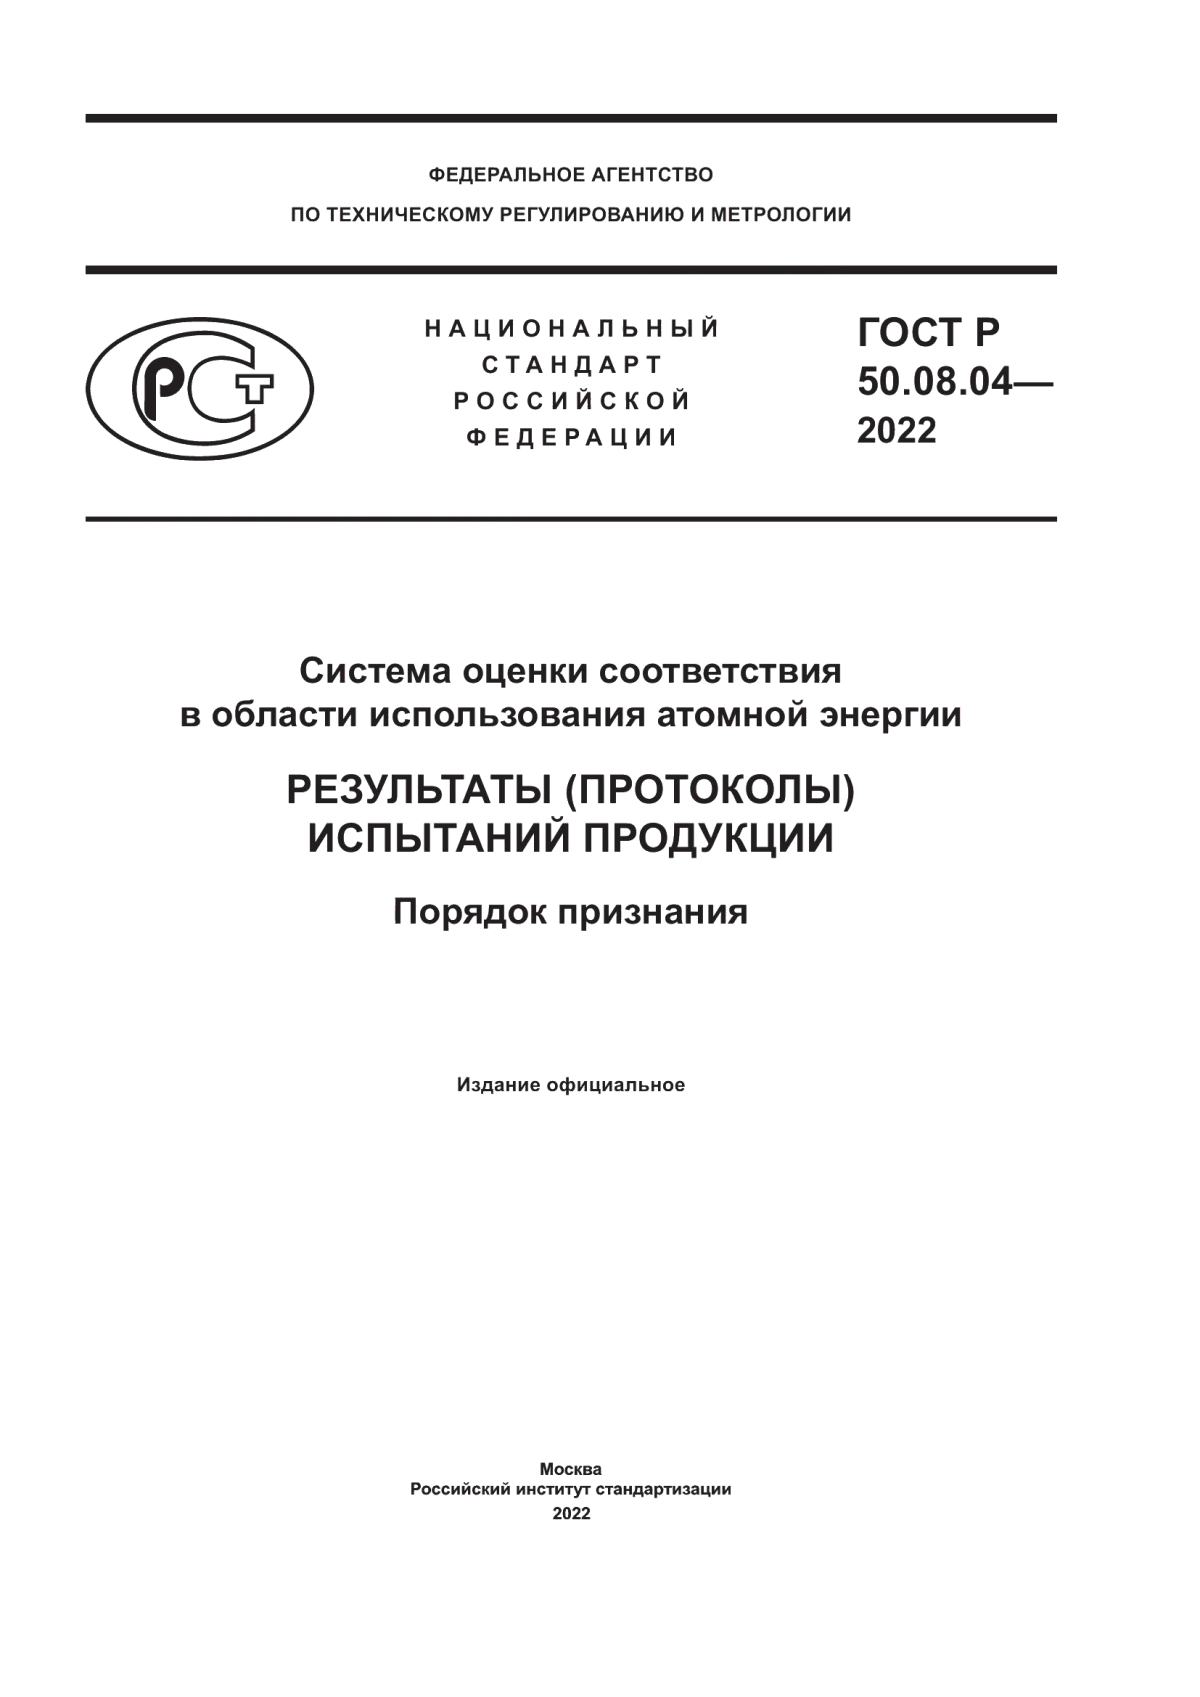 ГОСТ Р 50.08.04-2022 Система оценки соответствия в области использования атомной энергии. Результаты (протоколы) испытаний продукции. Порядок признания